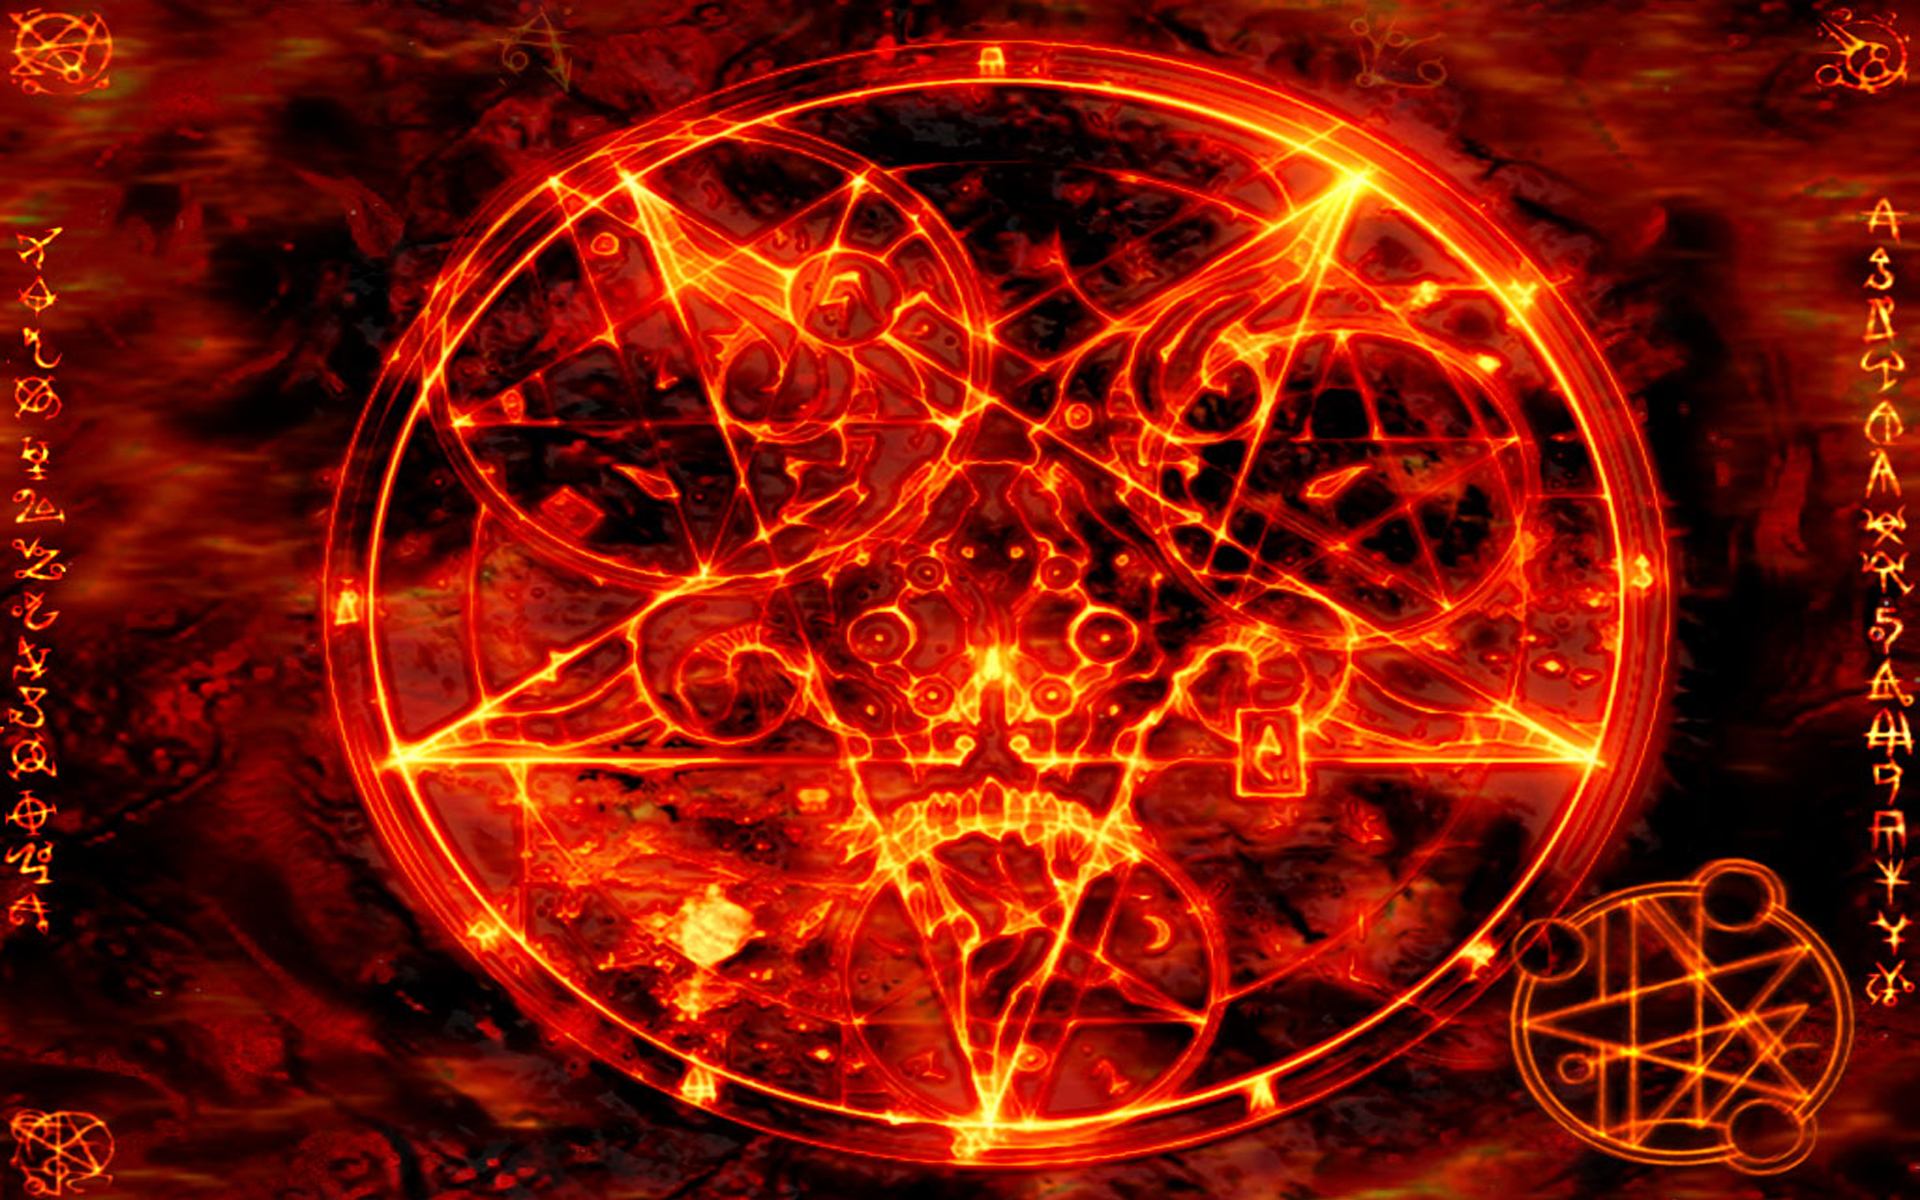 Pentagramma из Doom 3